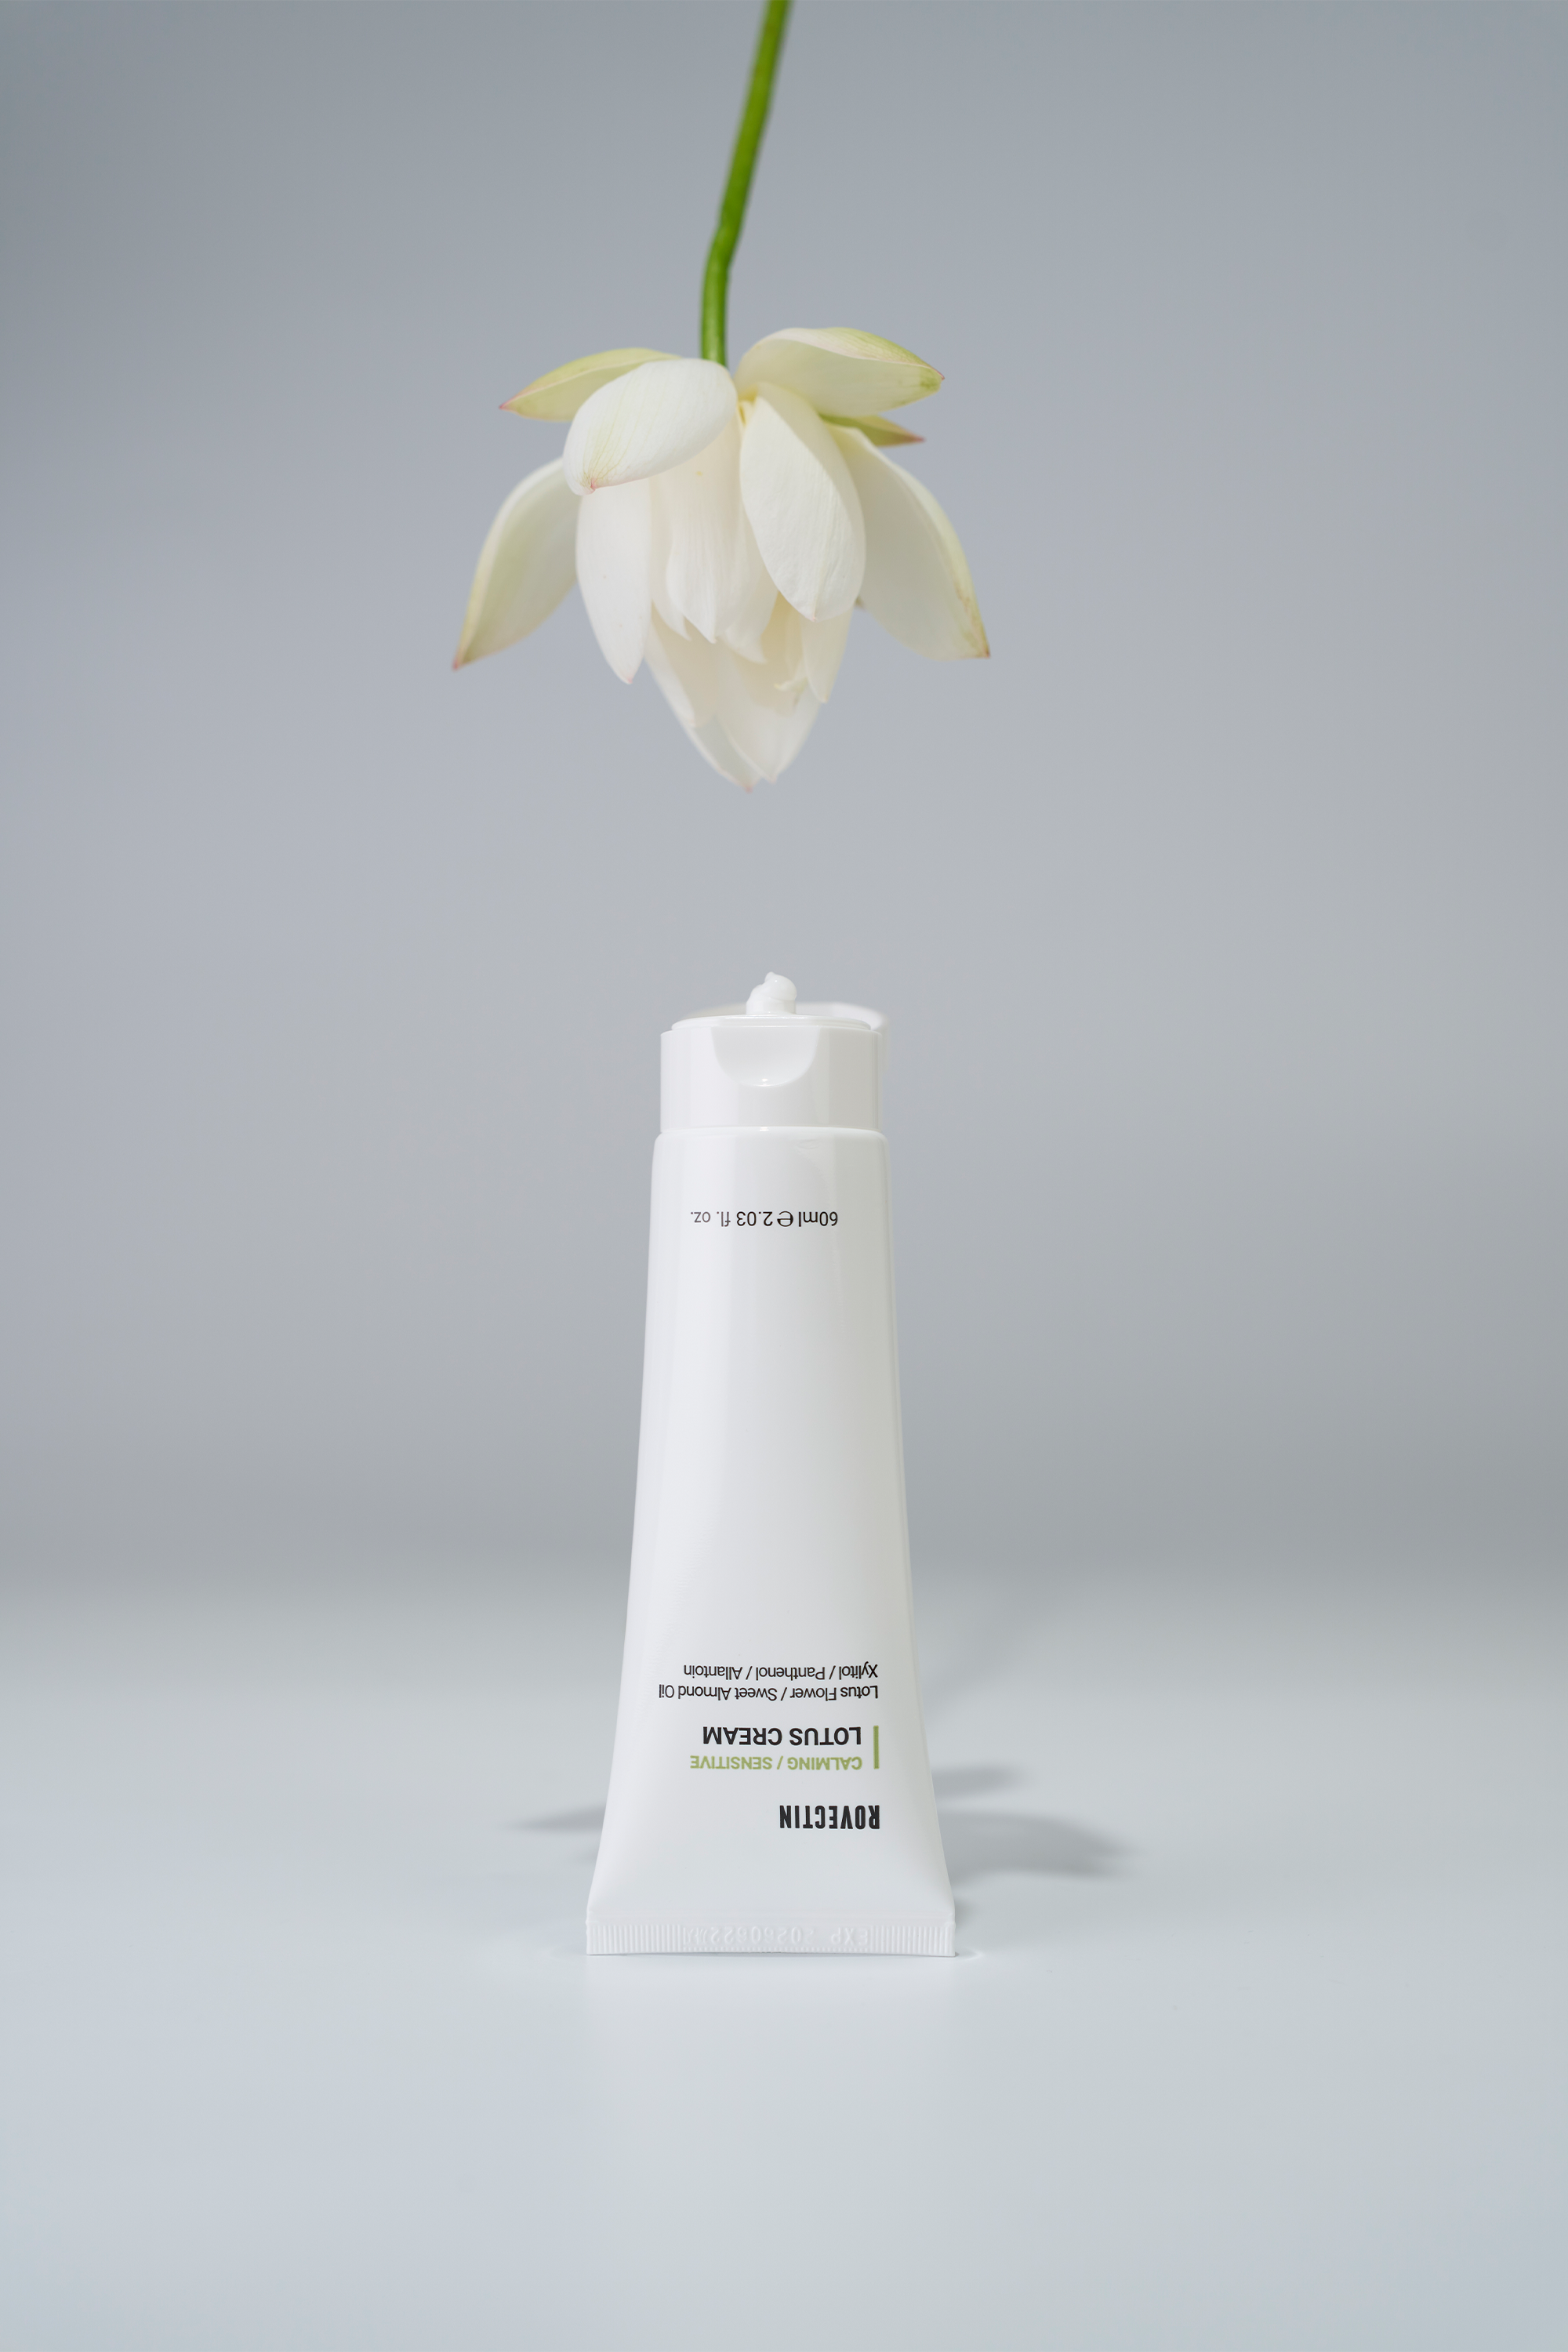 Lotus Water Cream Duo - Rovectin Skin Essentials